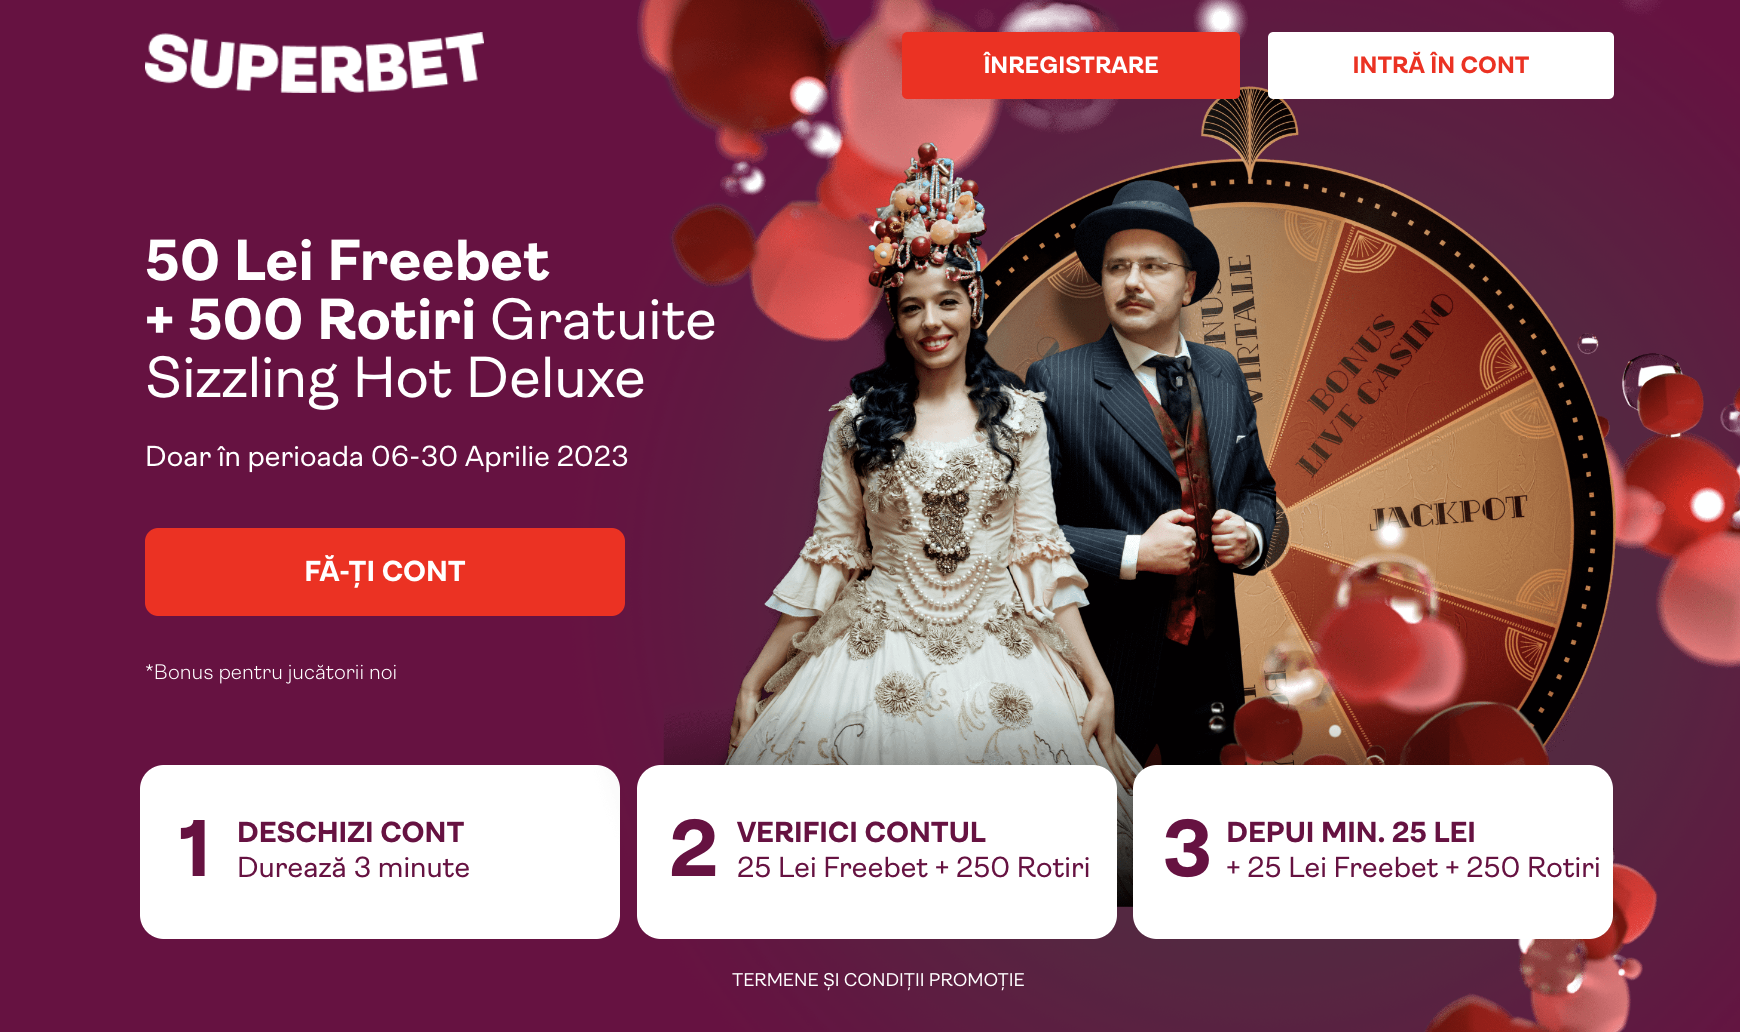 freebet gratis tanpa deposit